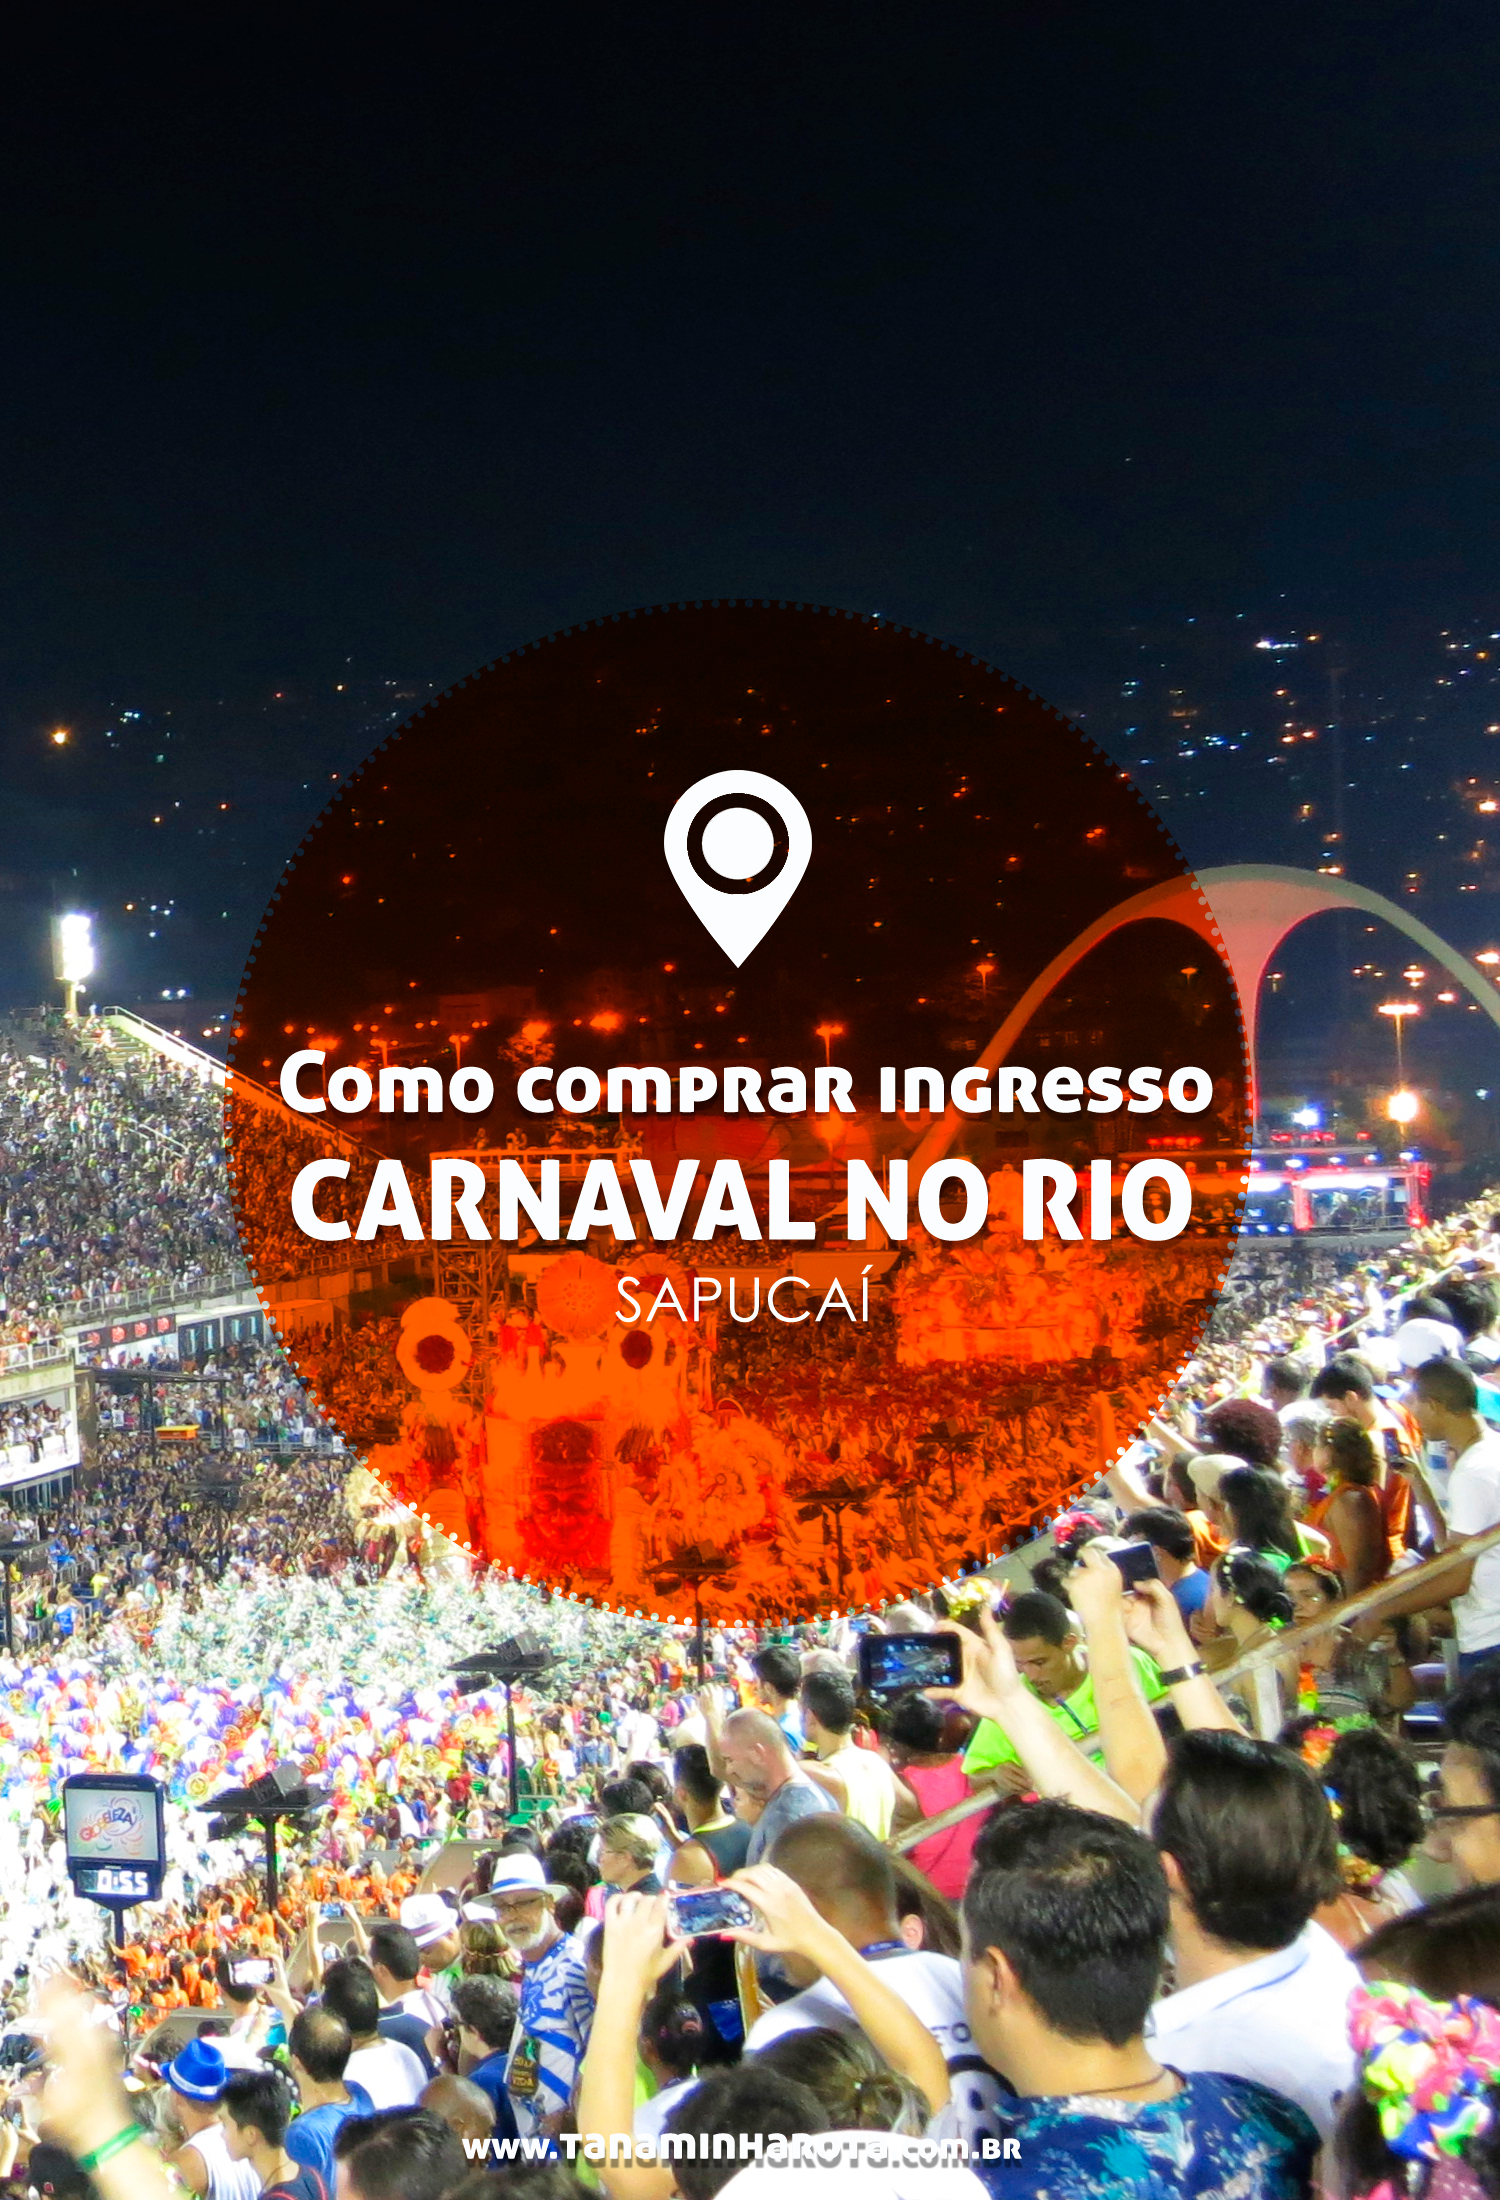 carnaval-do-rio-sambodromo-marques-de-sapucai-como-comprar-ingresso